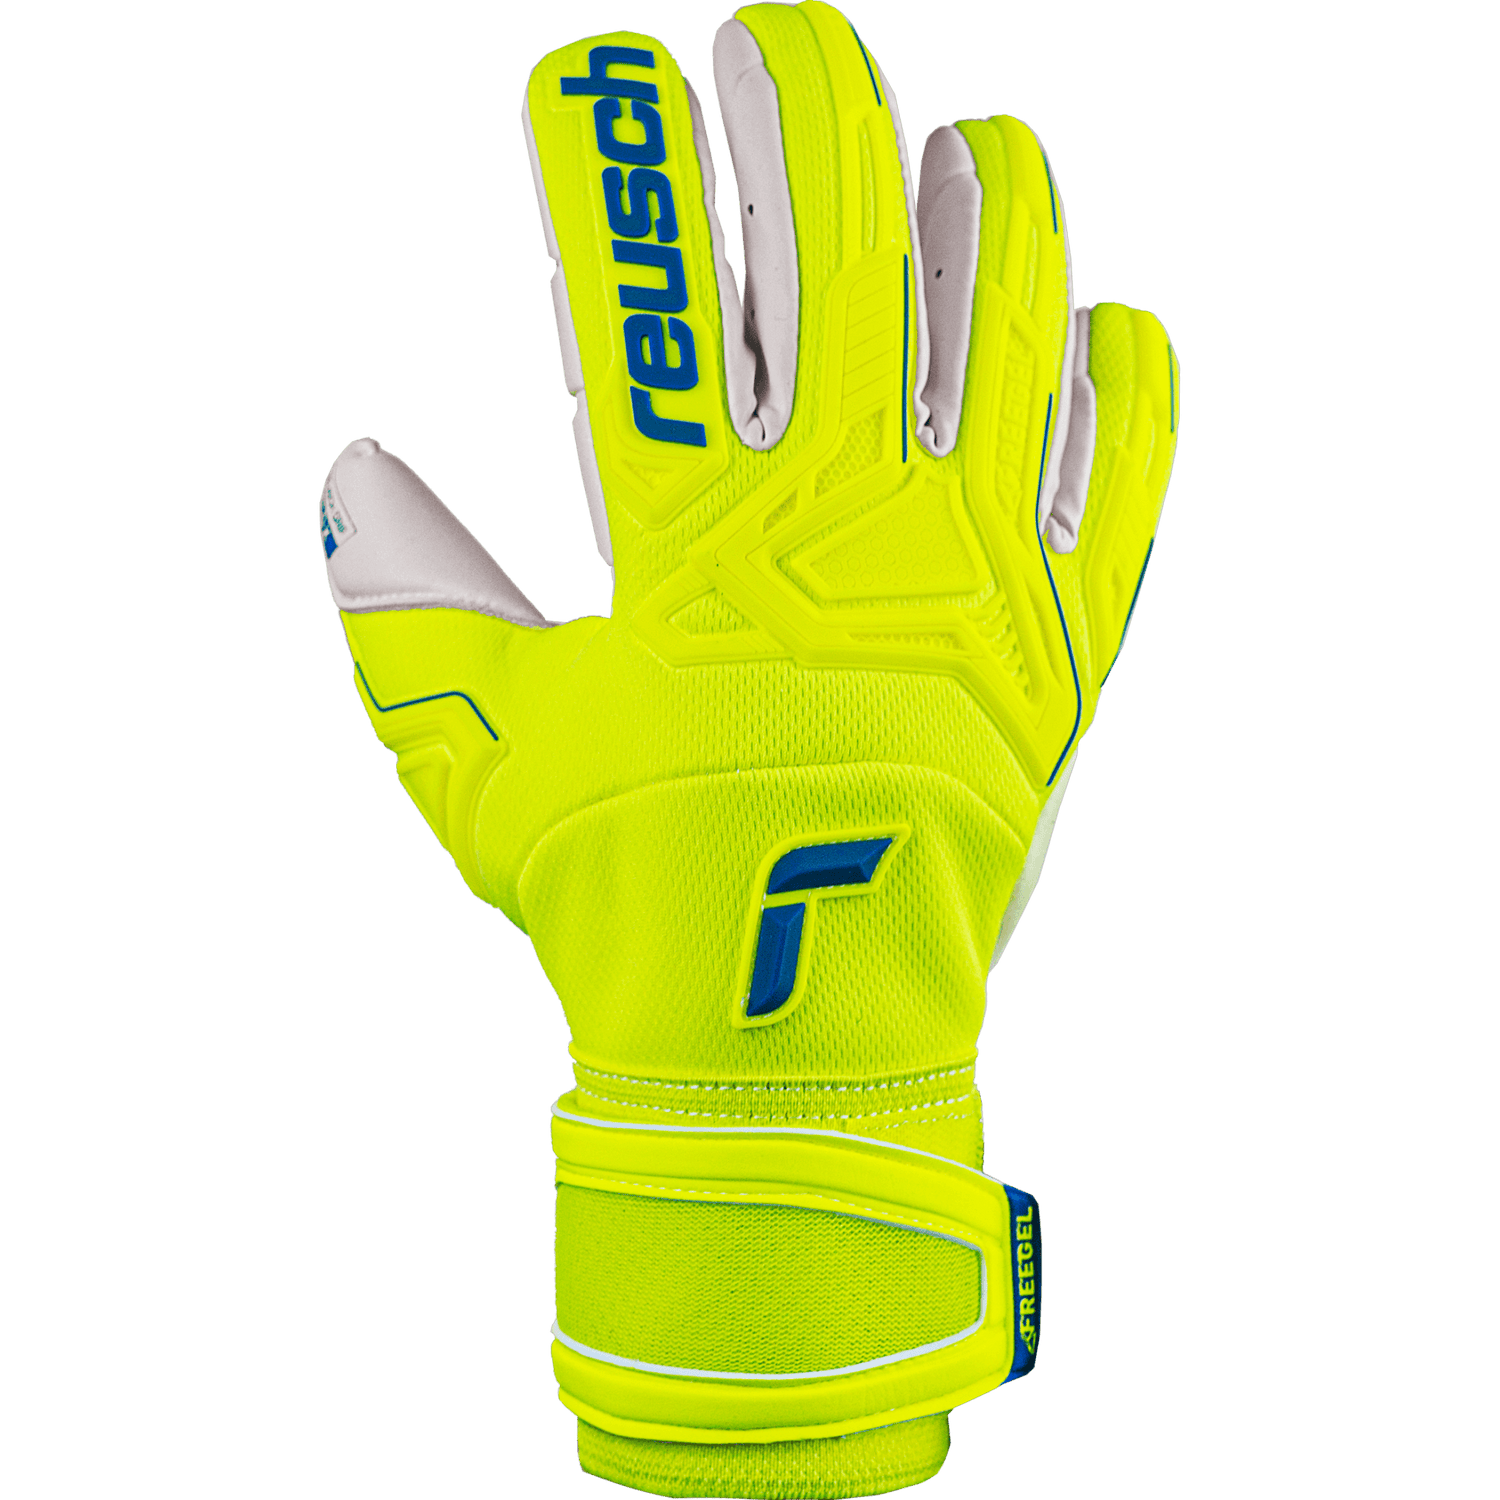 Reusch Attrakt Freegel Gold X Finger Support Goalkeeper Gloves - Yellow-Blue-White (Single - Outer)